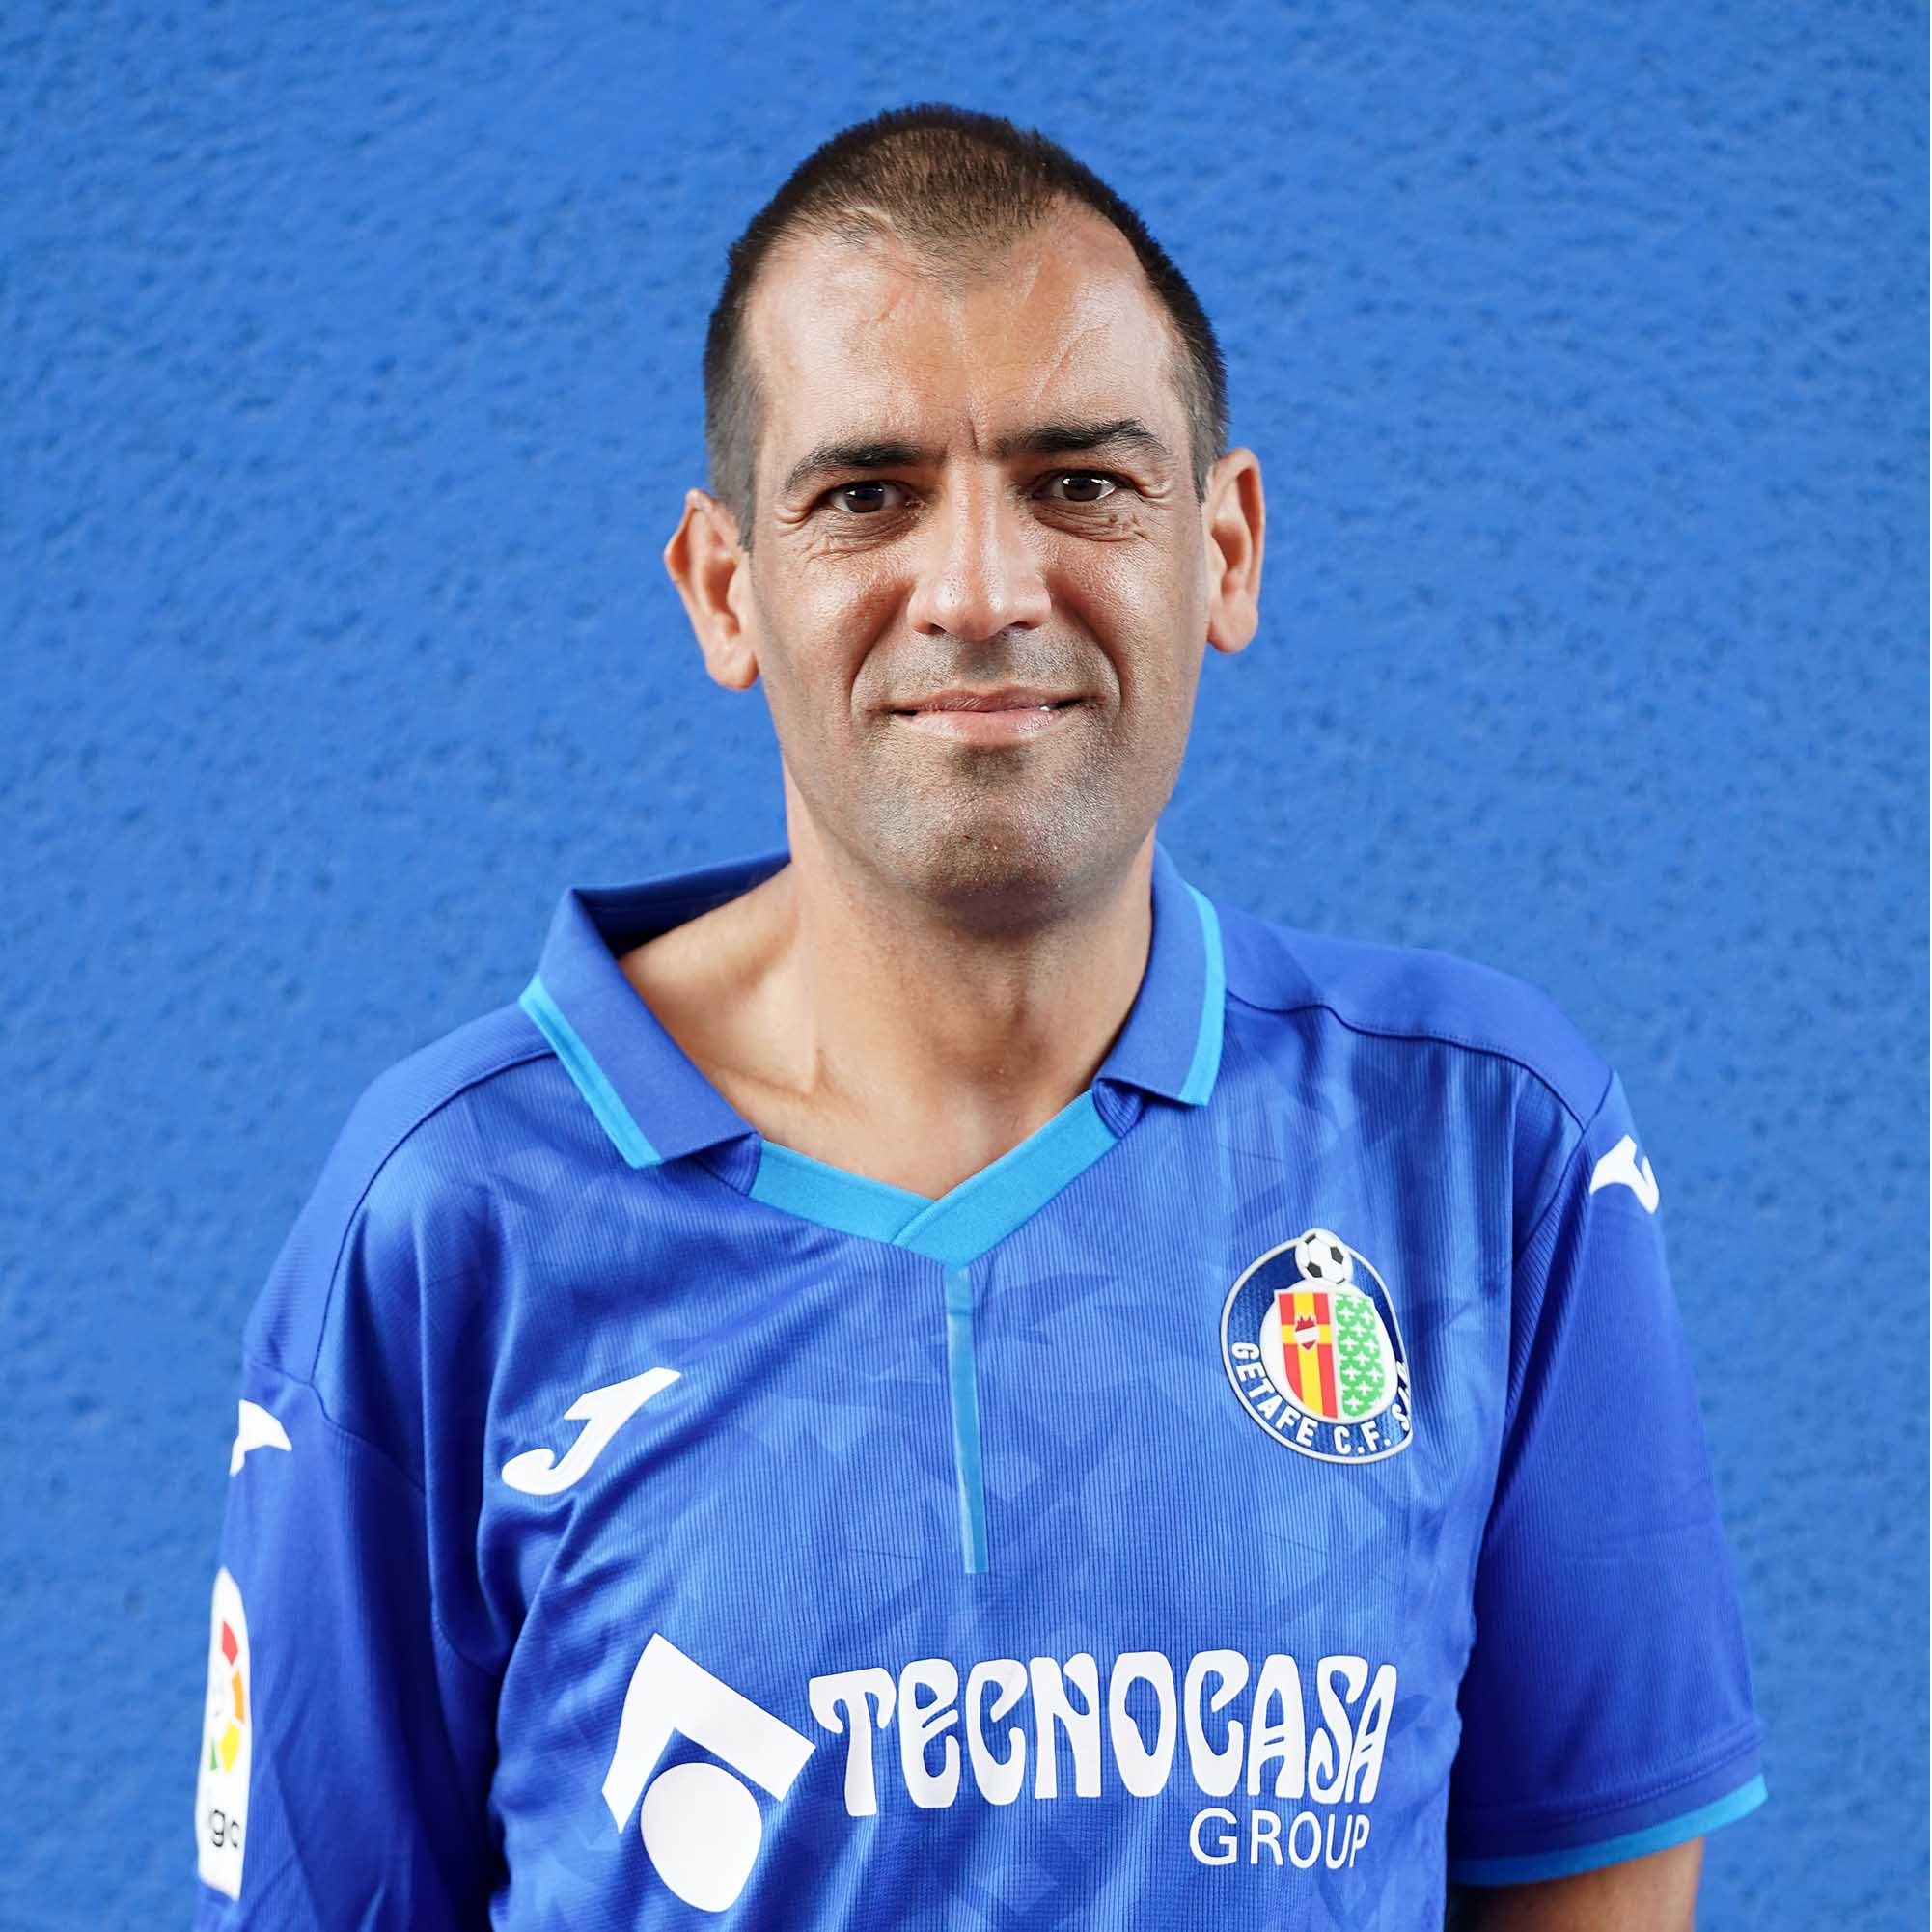 Juan Antonio Teno Mateos